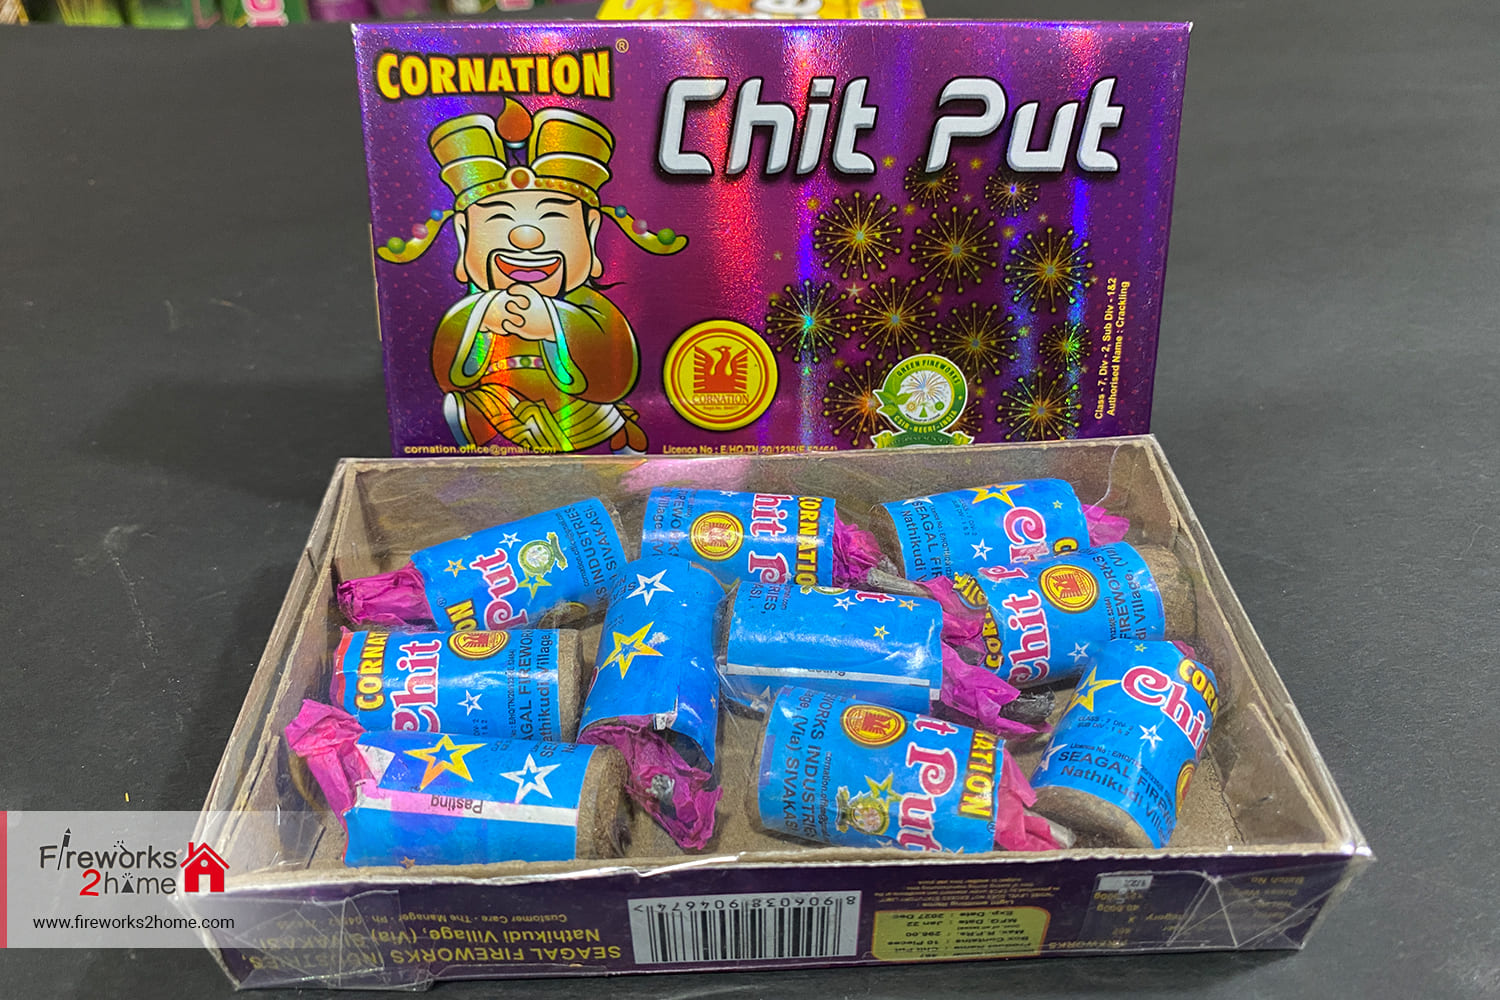 chitput-cornation